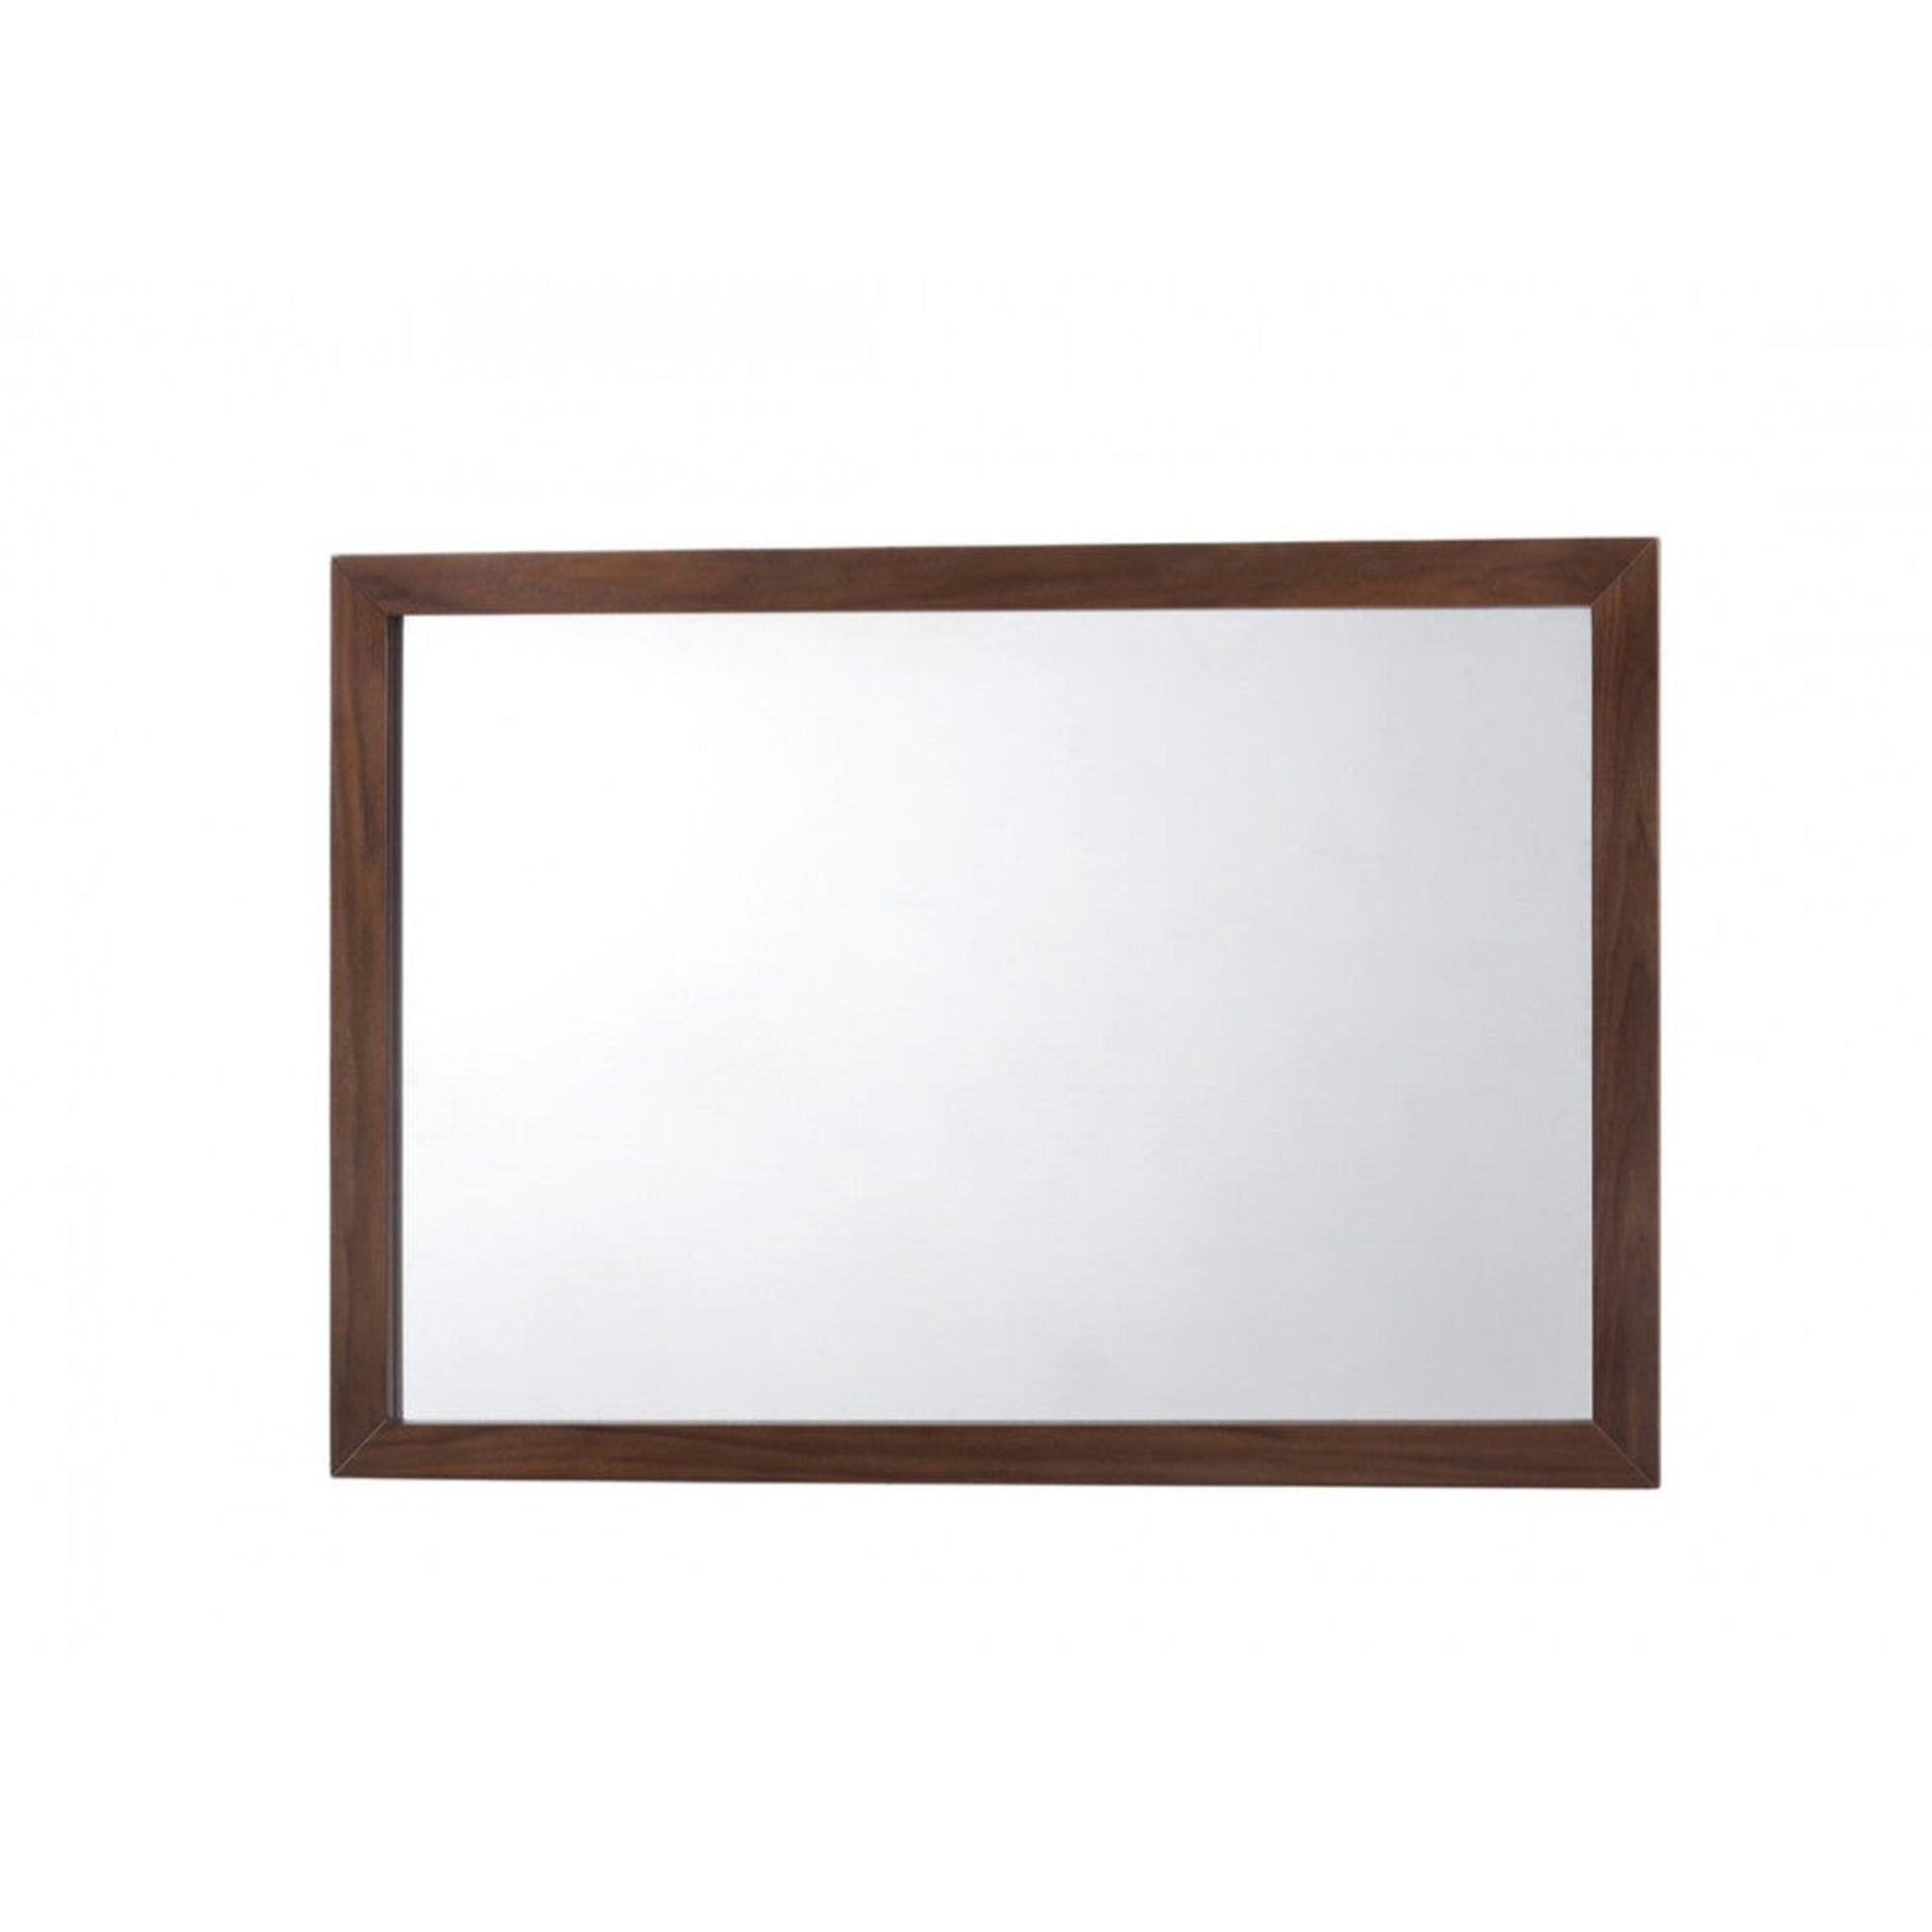 Benzara Walnut Rectangular Mid Century Modern Wooden Frame Mirror